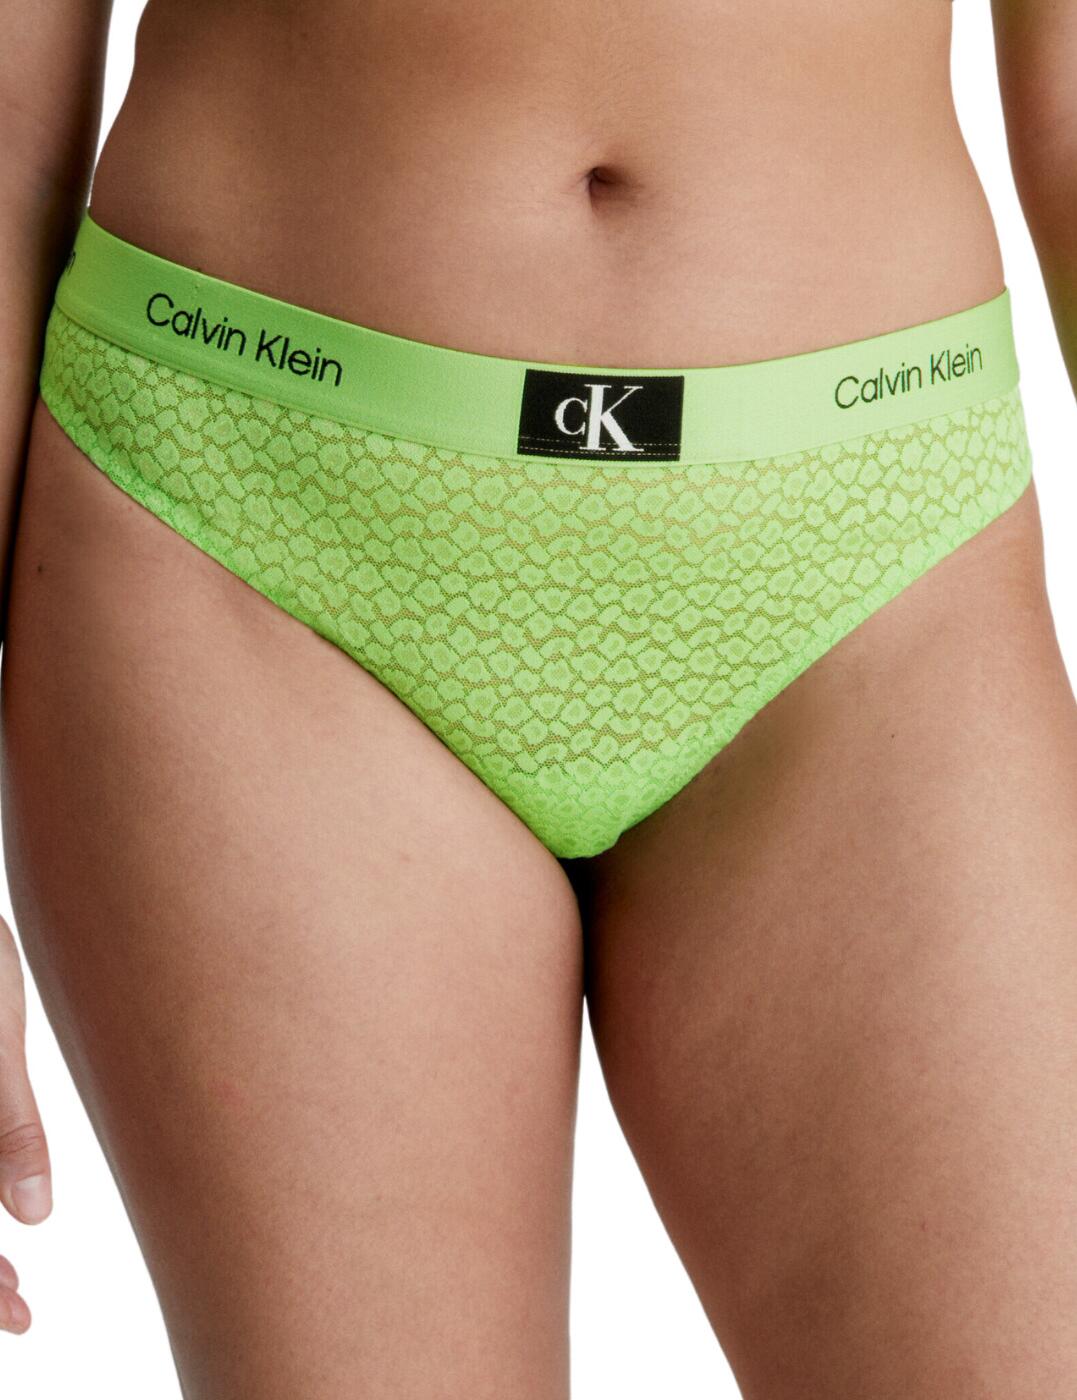 Calvin Klein, CK96 Unlined Bralette